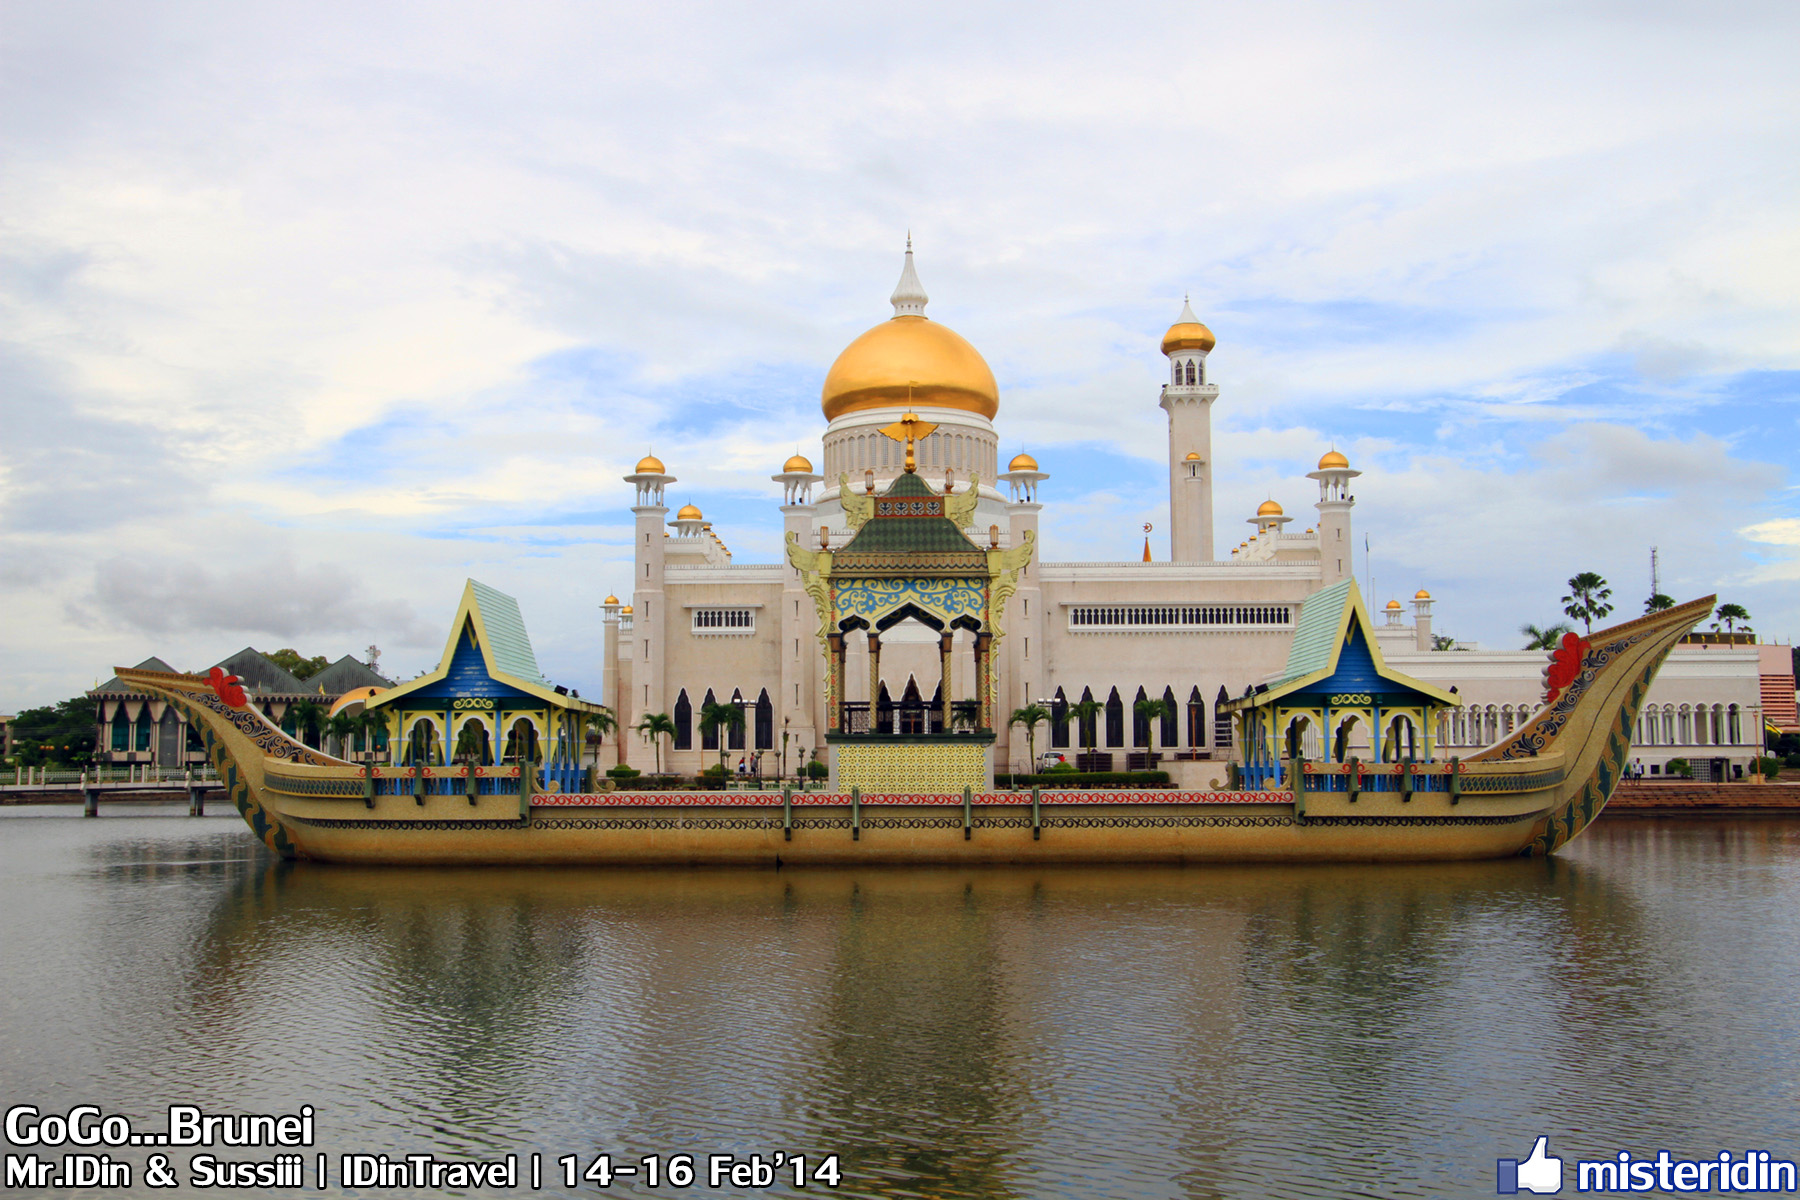 ทริปบรูไน ไม่ไปไม่รู้ ตอน: Gogo Brunei - Pantip